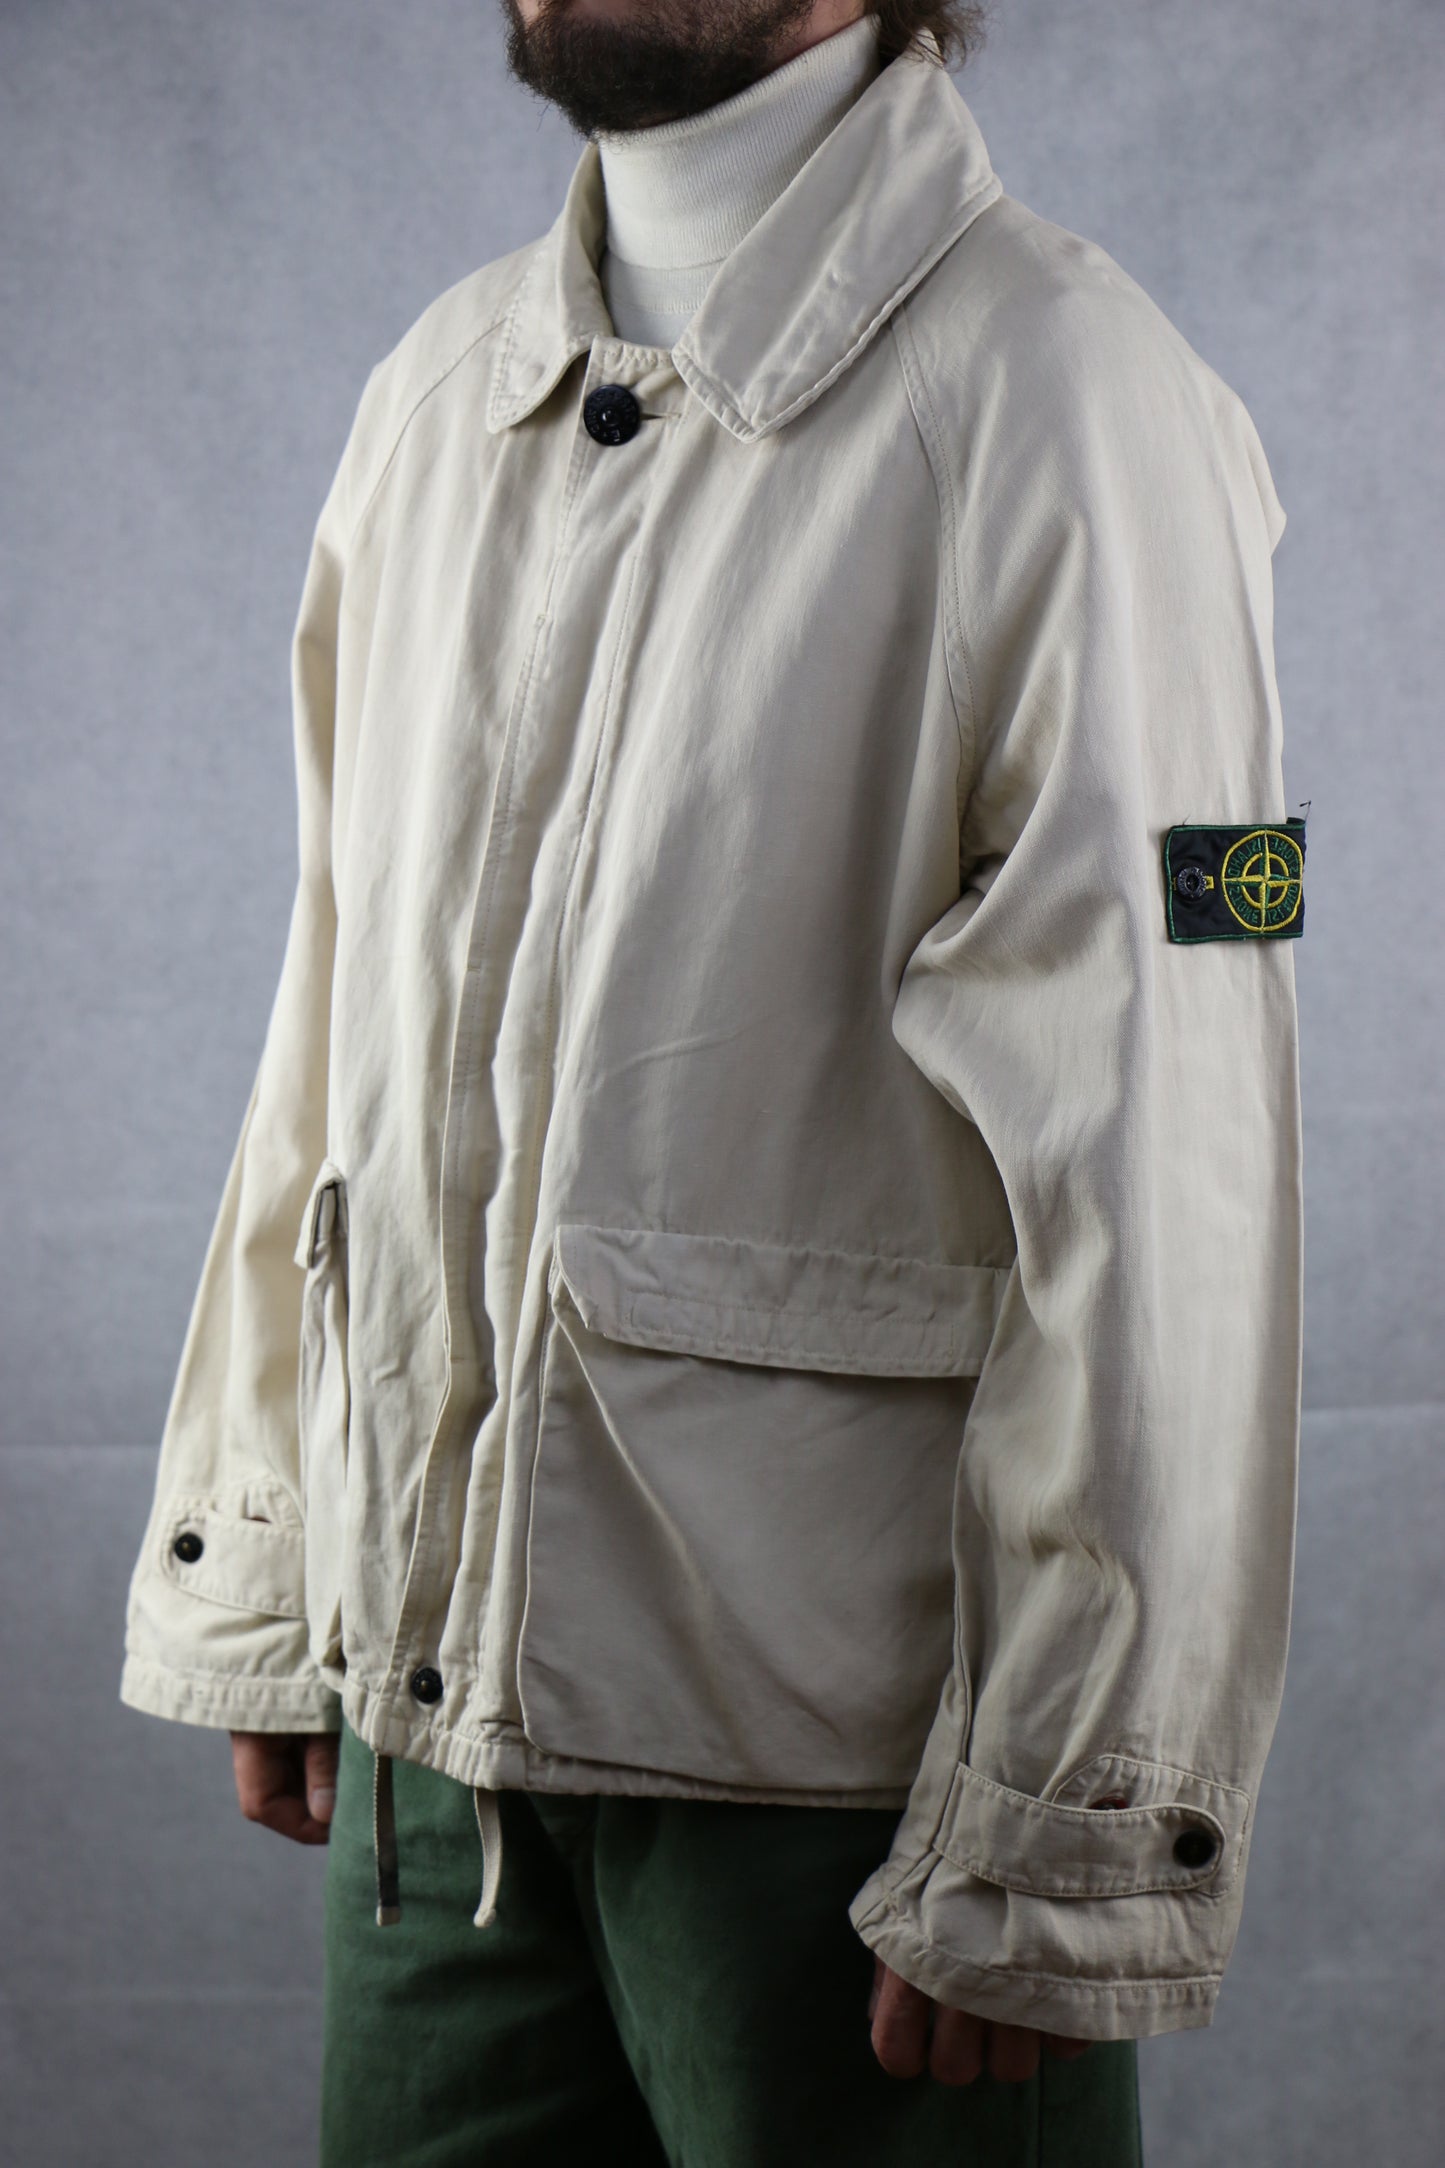 Stone Island Leinen Jacket - vintage clothing clochard92.com